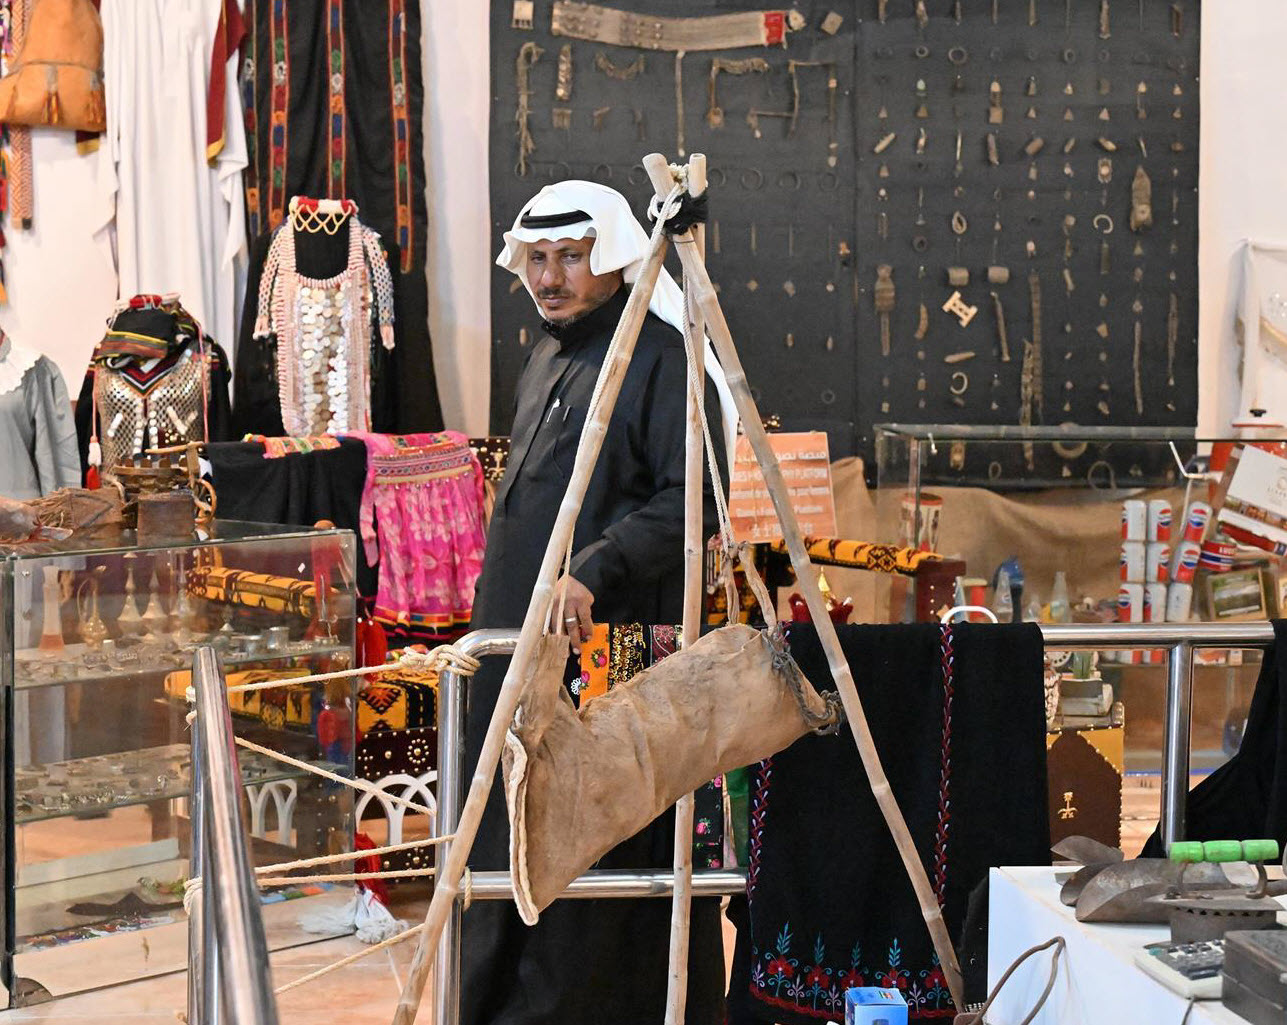  مواطن سعودي يقدم تجارب متنوعة في متحفه الخاص بمقتنيات تراثية تعود لعدة قرون